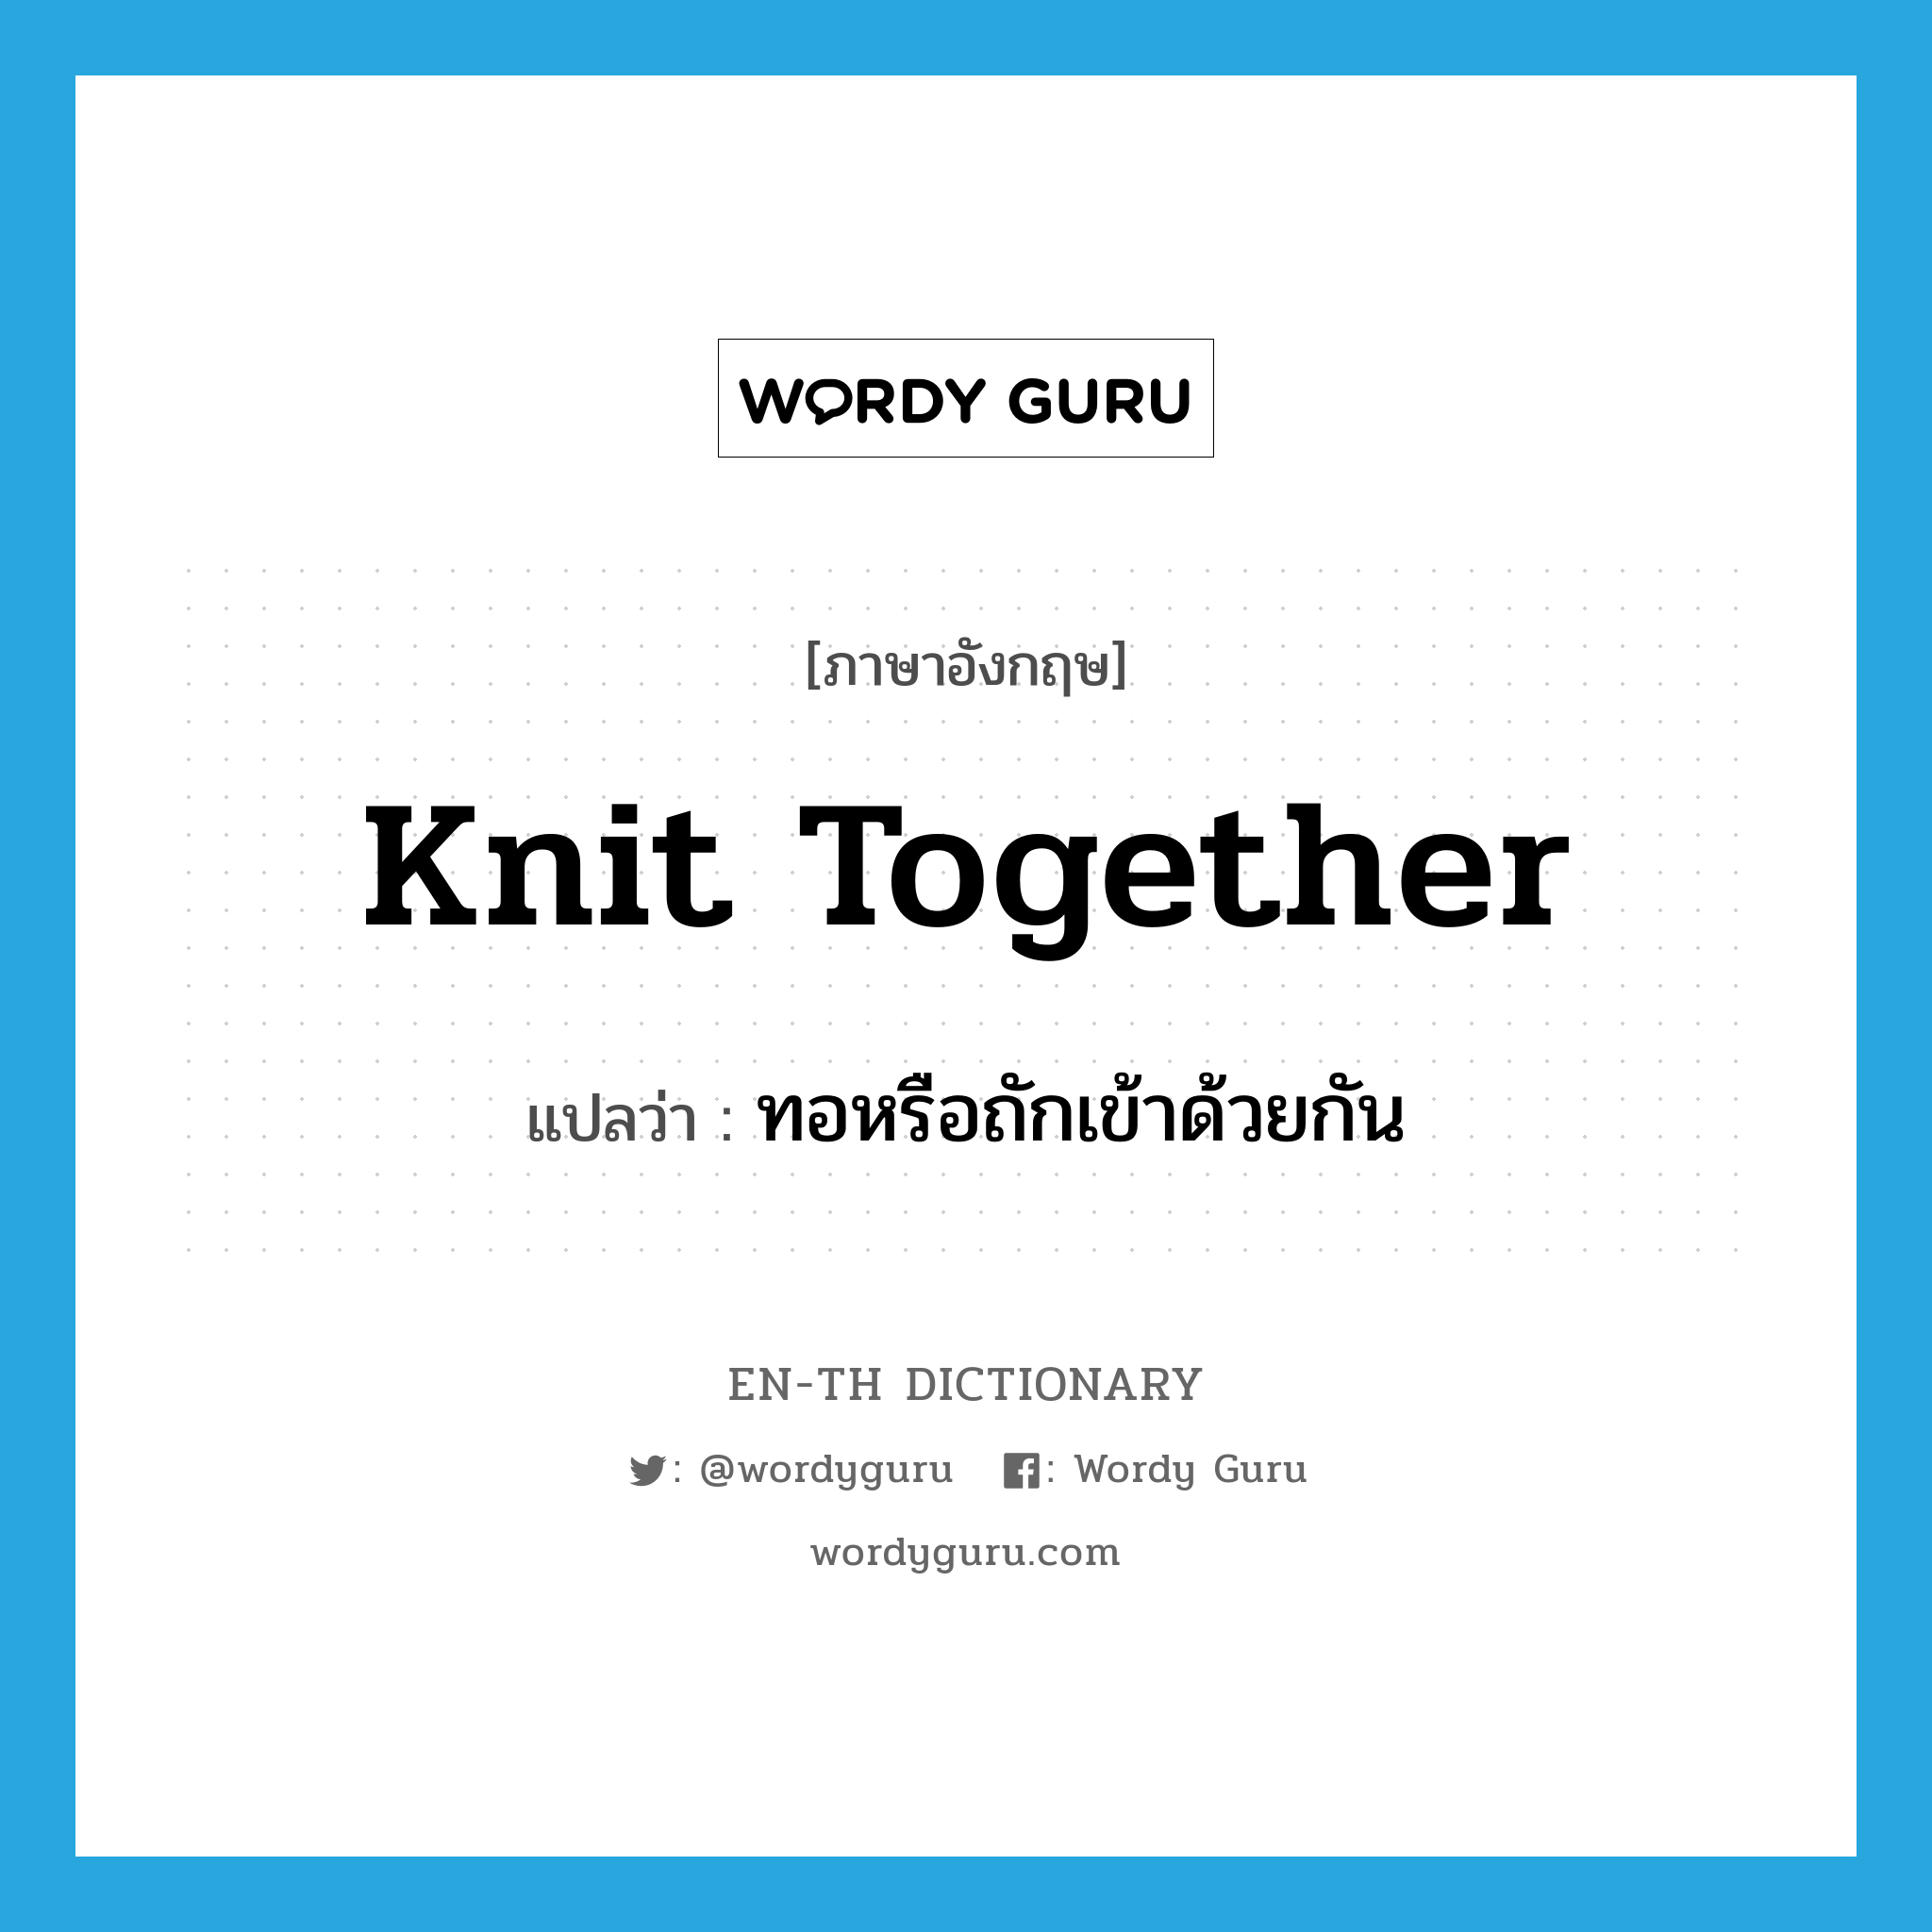 ทอหรือถักเข้าด้วยกัน ภาษาอังกฤษ?, คำศัพท์ภาษาอังกฤษ ทอหรือถักเข้าด้วยกัน แปลว่า knit together ประเภท PHRV หมวด PHRV